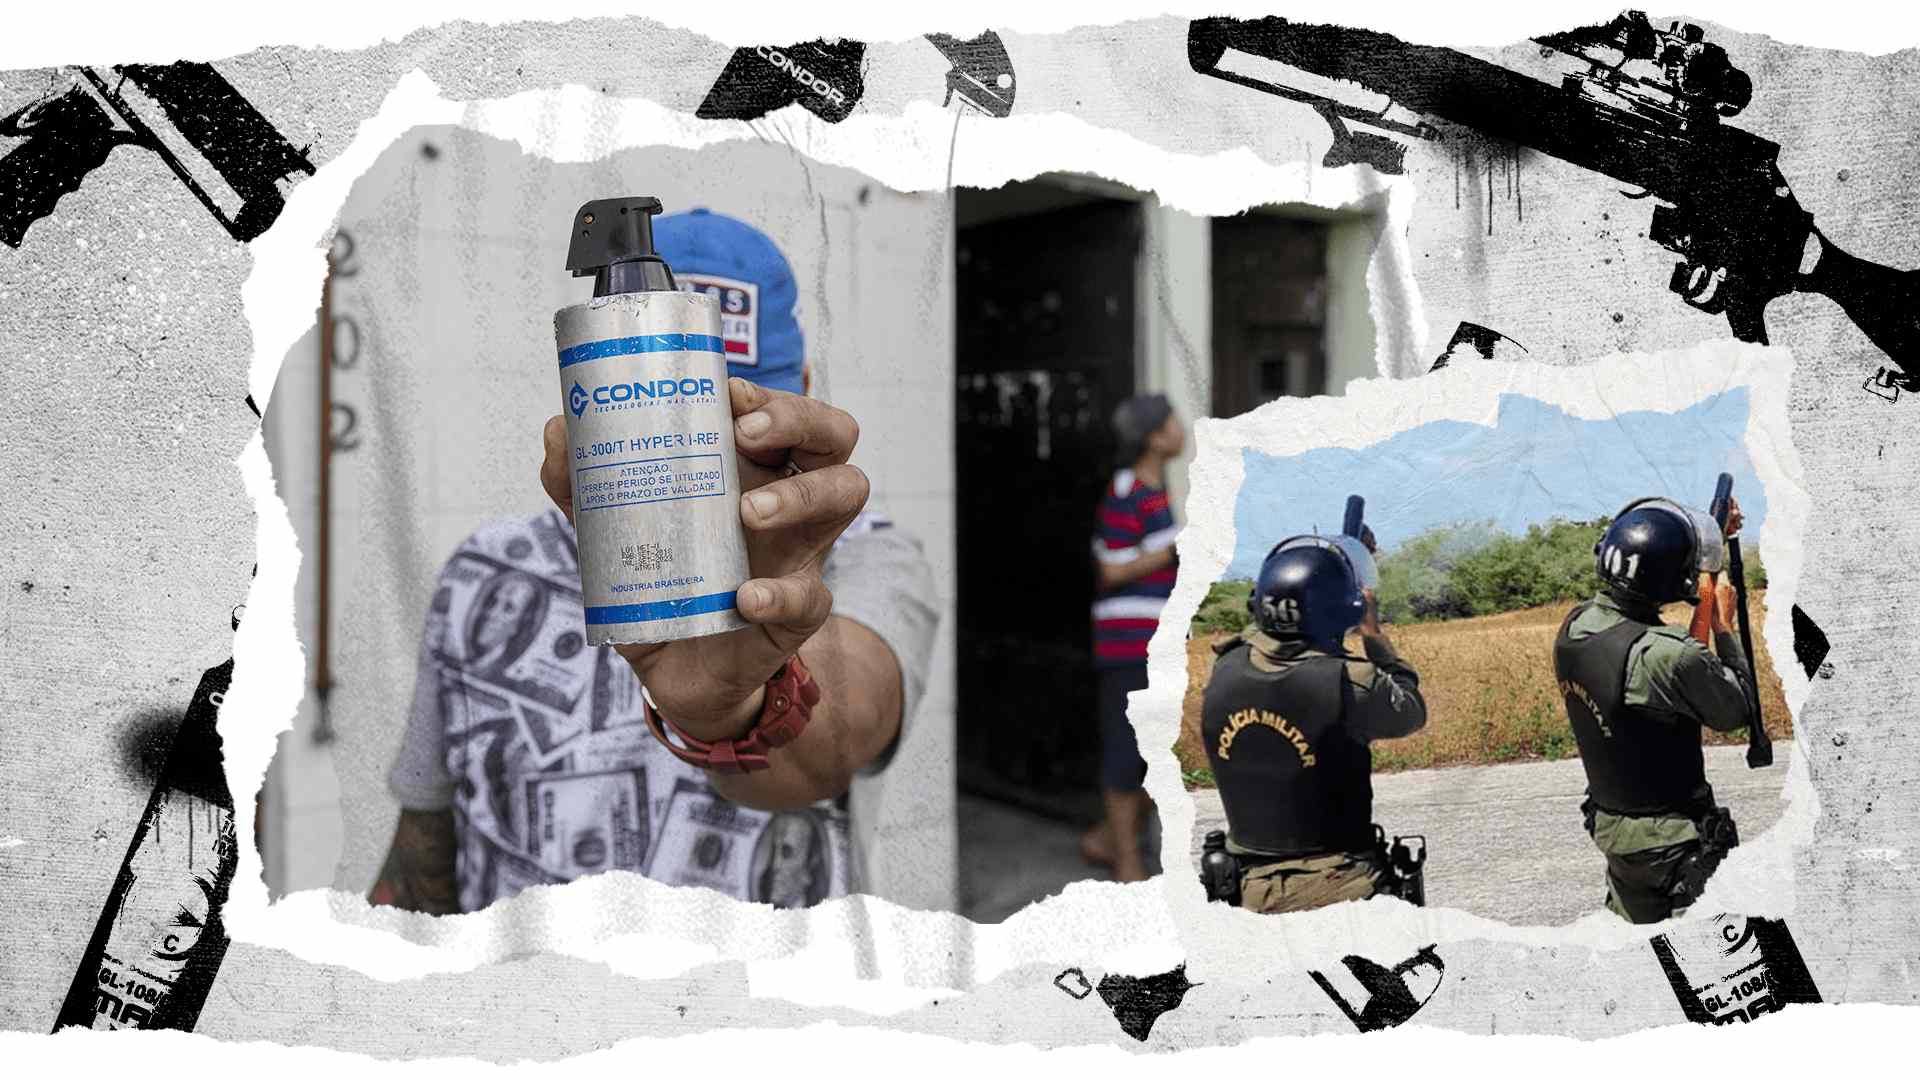 Moradores de Paraisópolis, em São Paulo, mostram latas de uma granada da Condor usada durante a ação policial que deixou vários mortos e feridos em um baile funk da comunidade | Foto: Adriano Vizoni-Folhapress